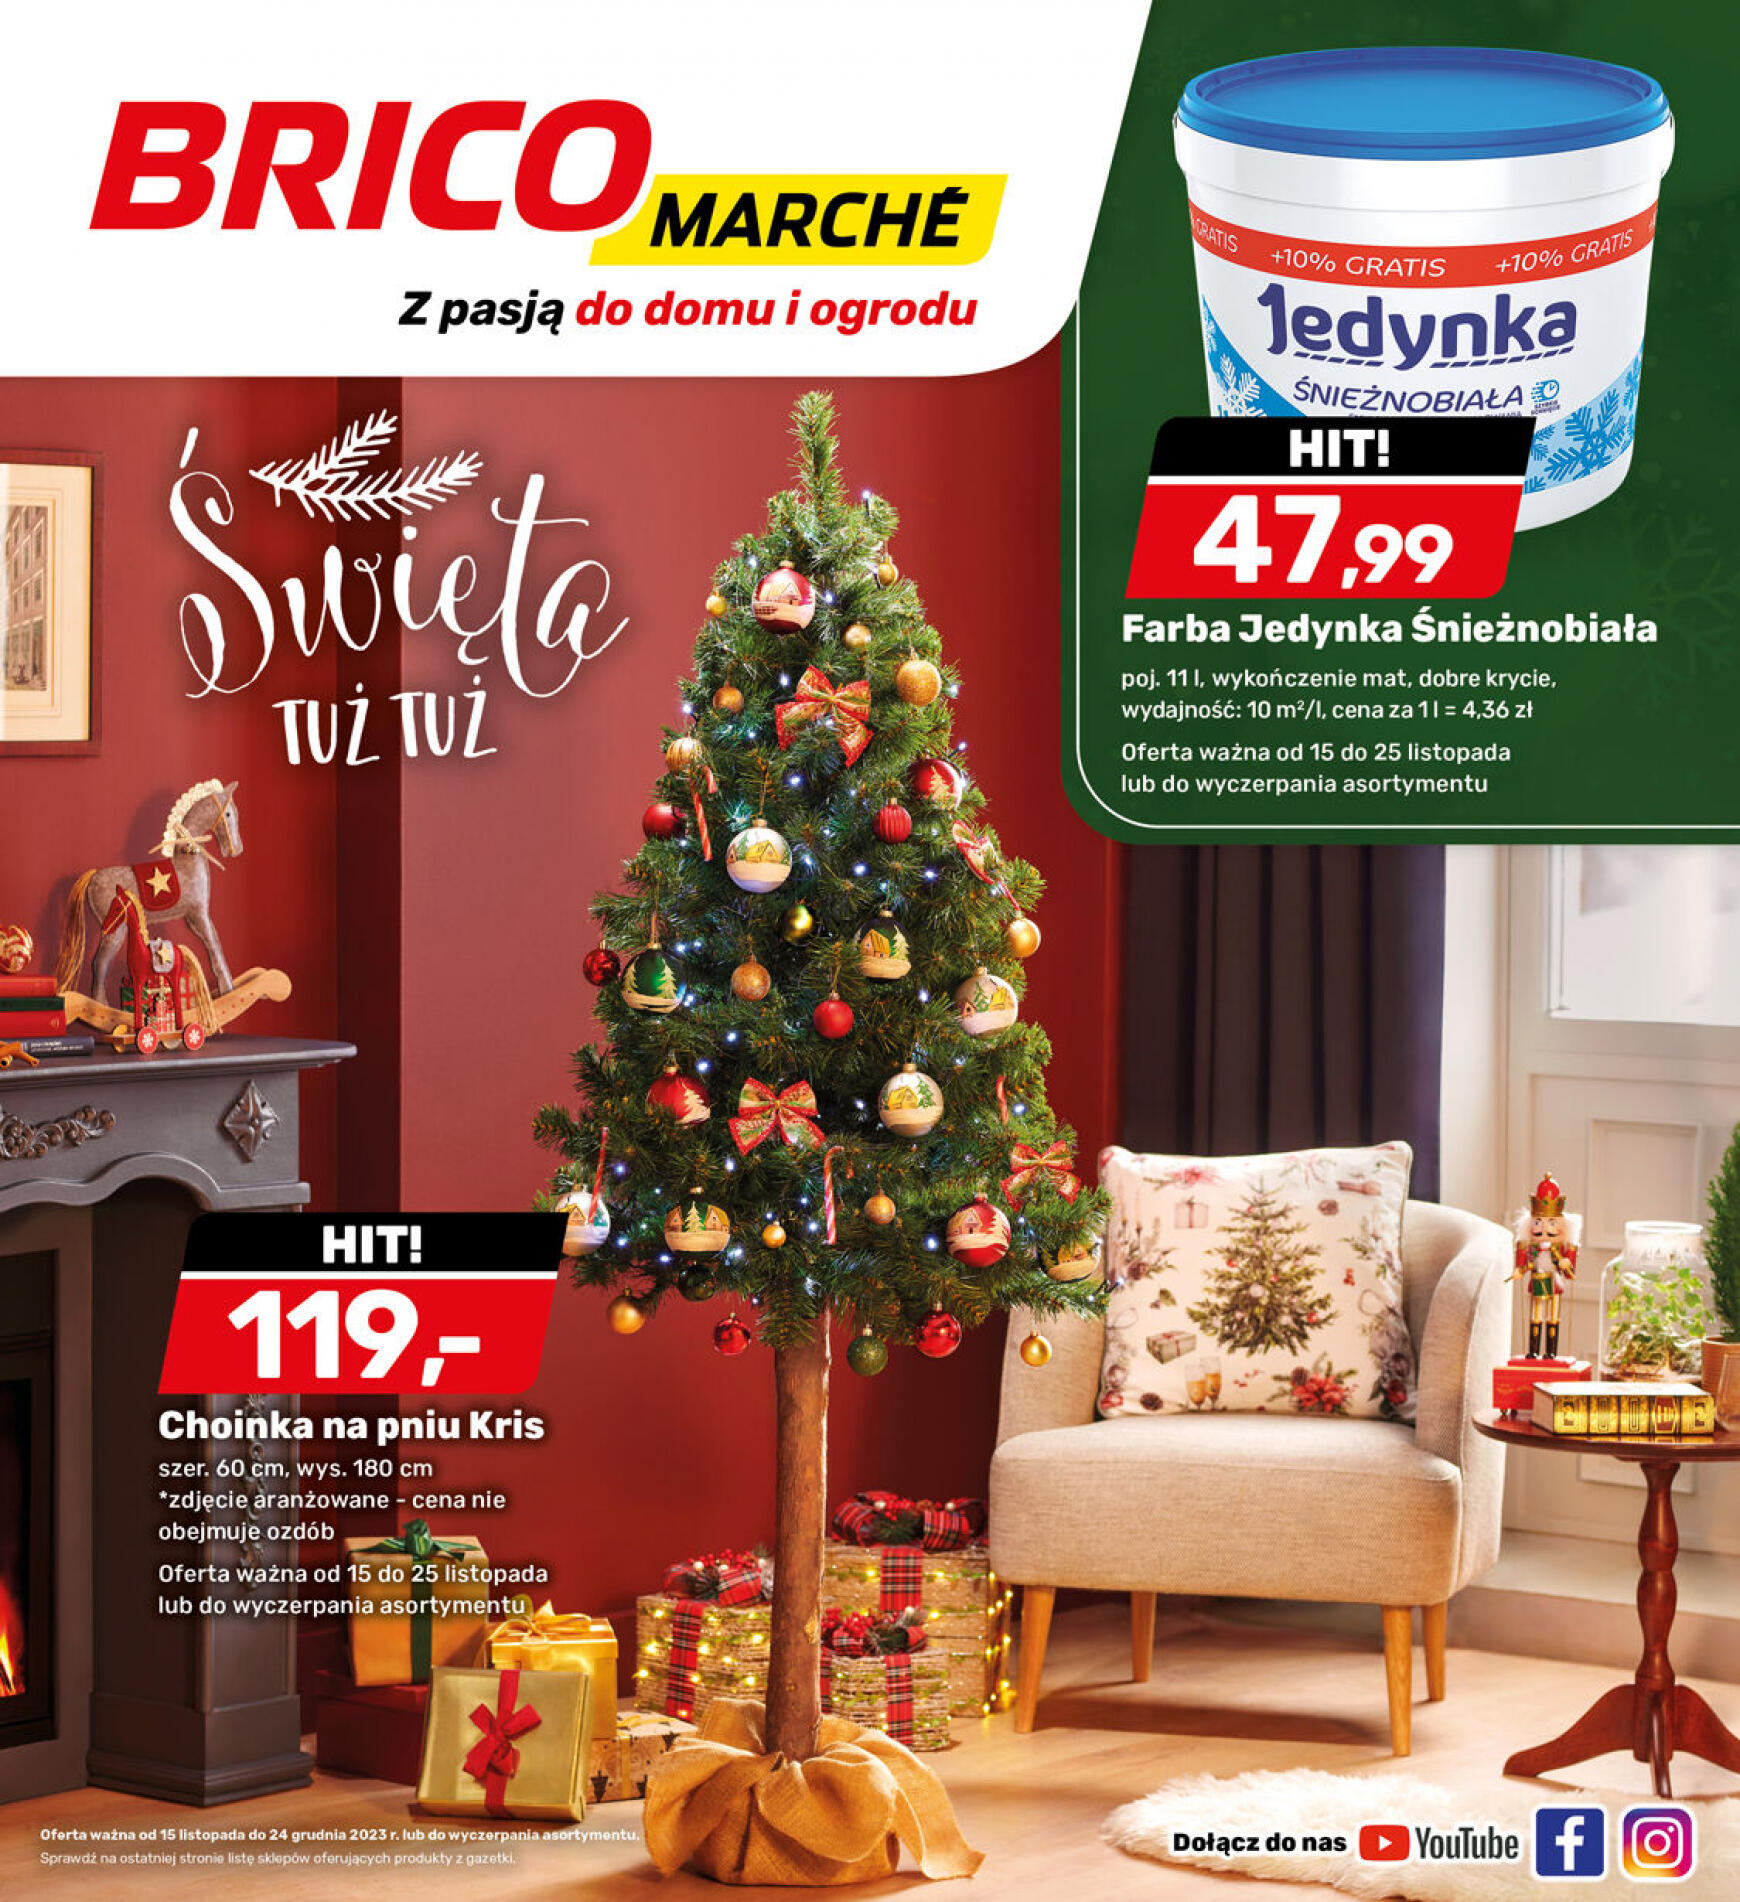 brico-marche - - Bricomarche - page: 14